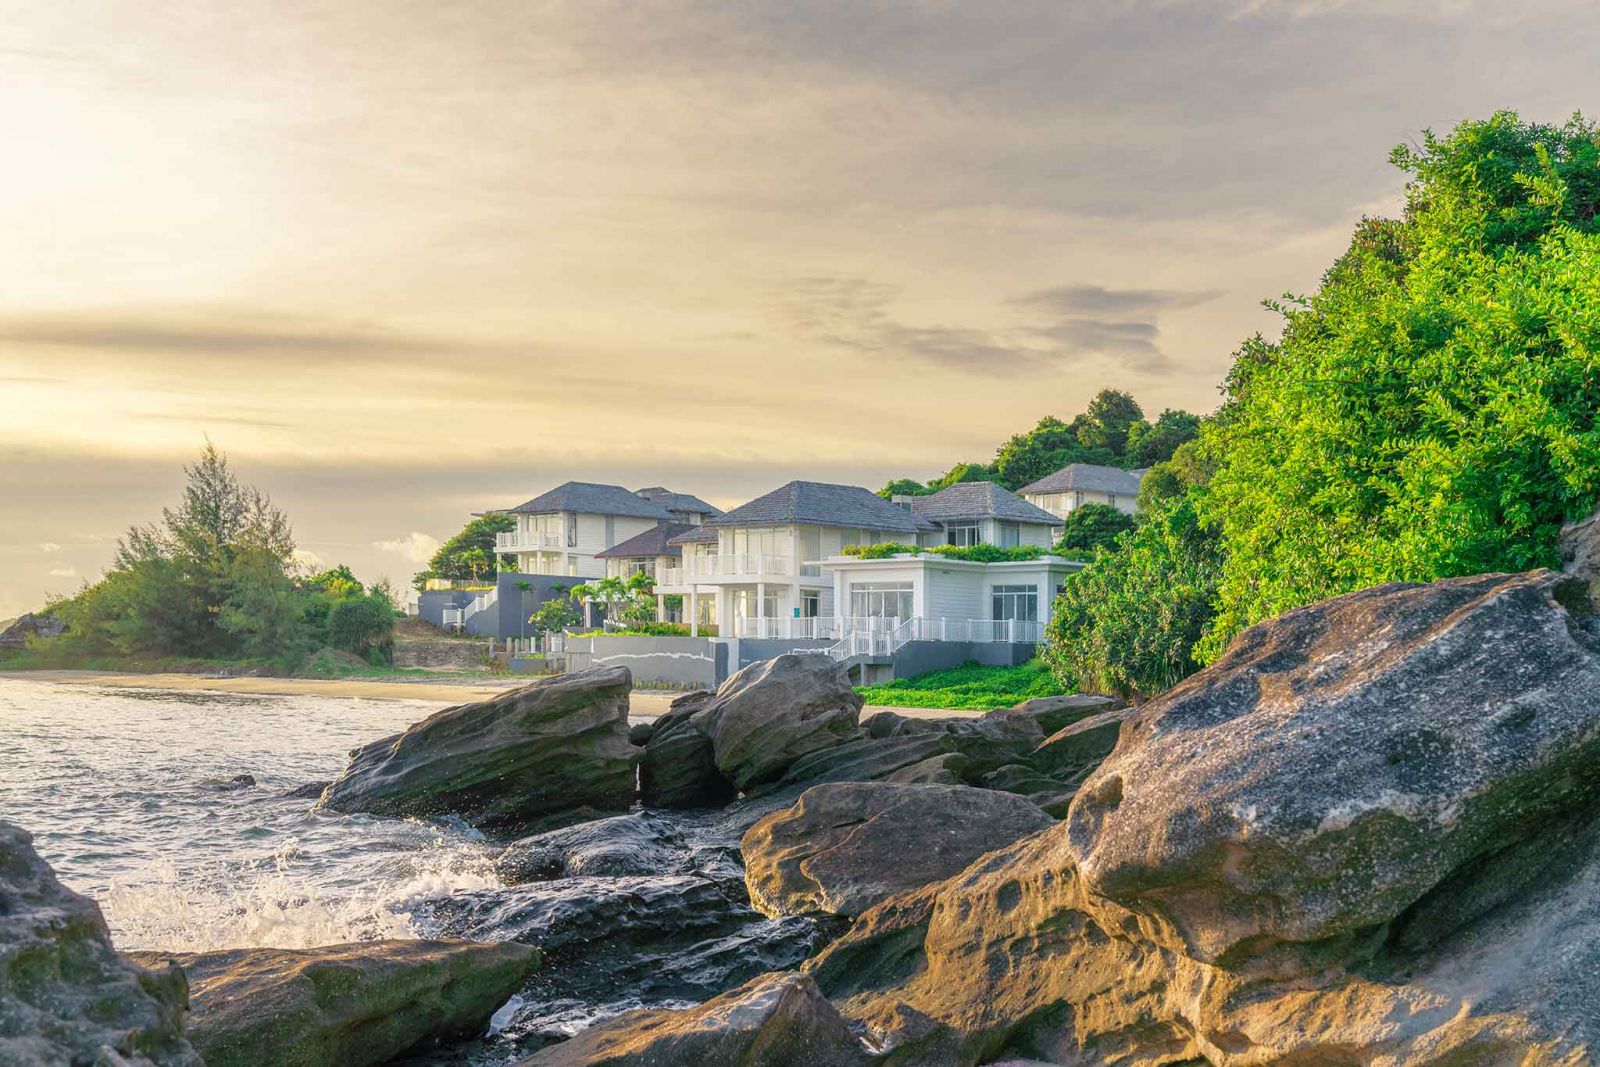 Nhu cầu về bất động sản ven biển đang tăng cao (Ảnh: Dự án biệt thự nghỉ dưỡng của Sun Group tại mũi Ông Đội, Phú Quốc)